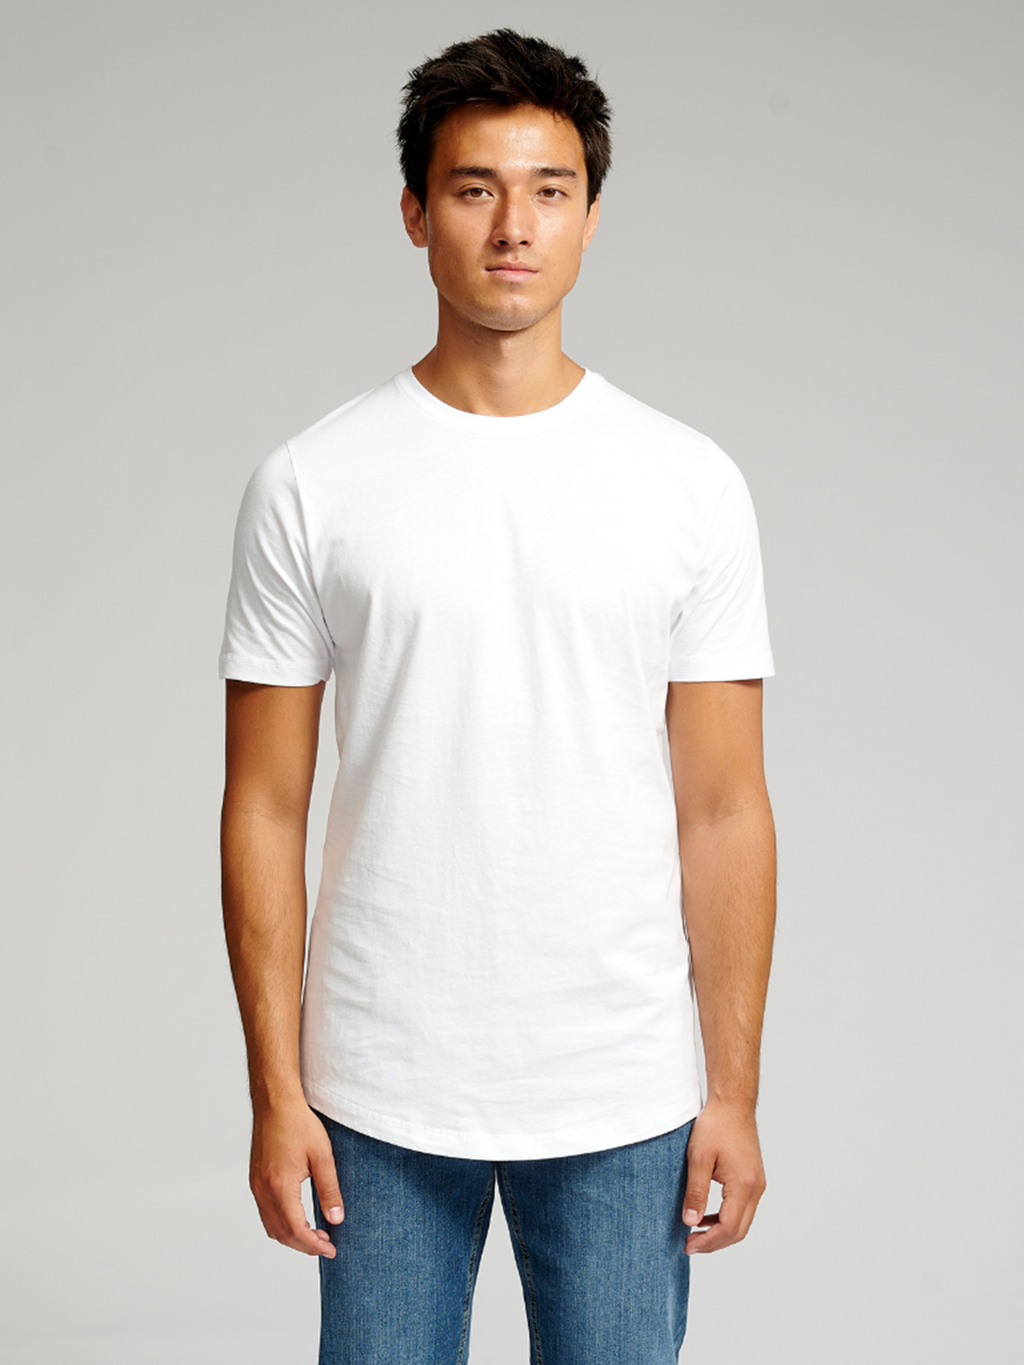 Lang T-skjorte - Pakketilbud (3 stk.)